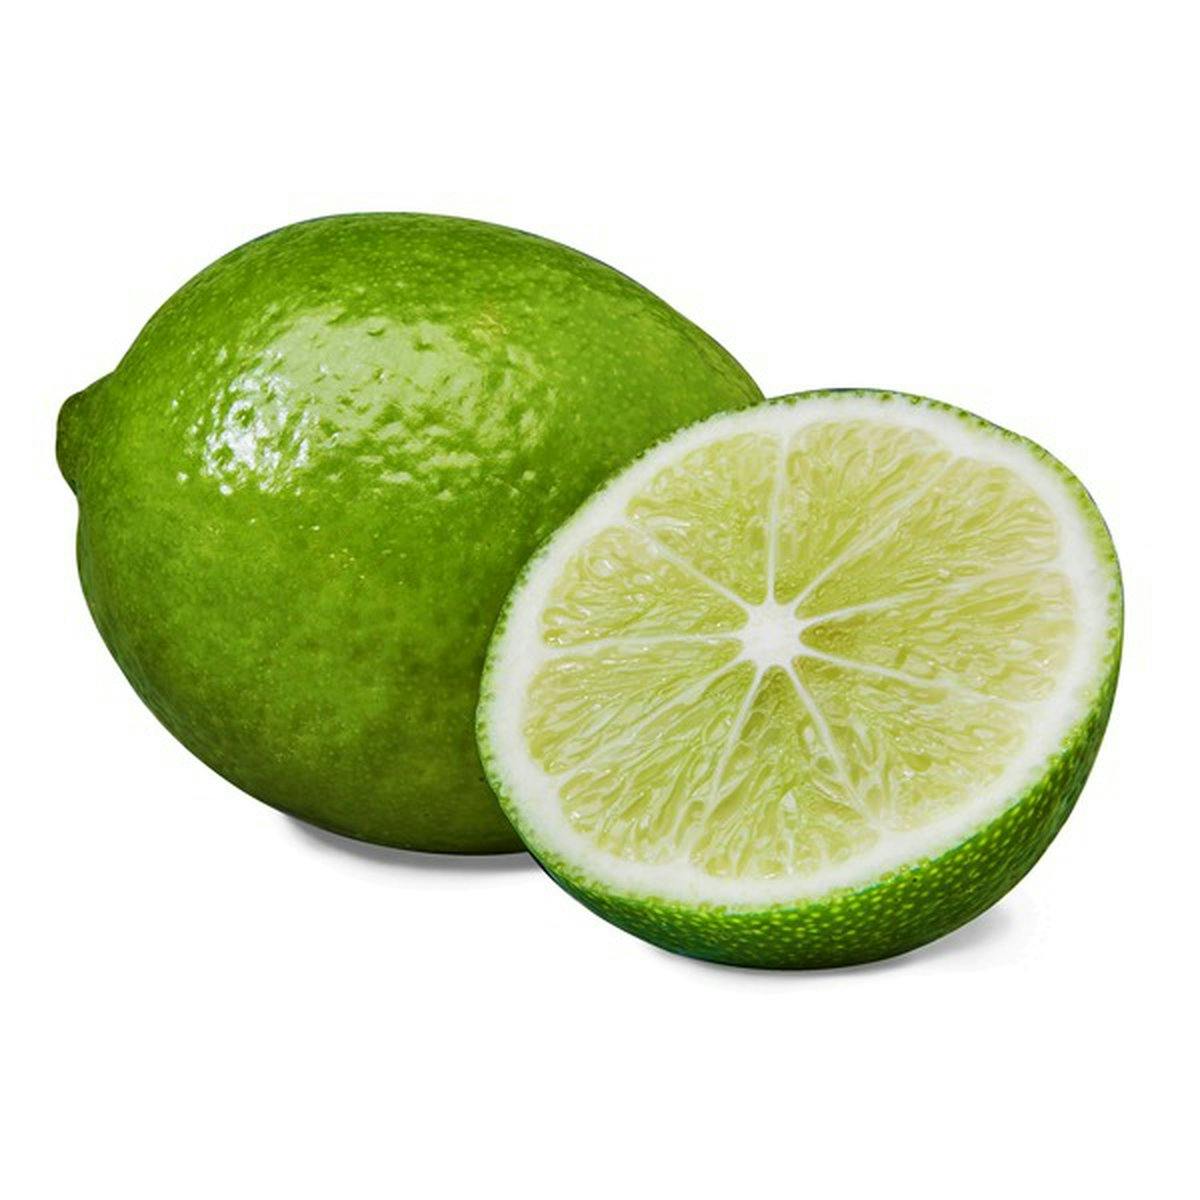 limes (juiced)